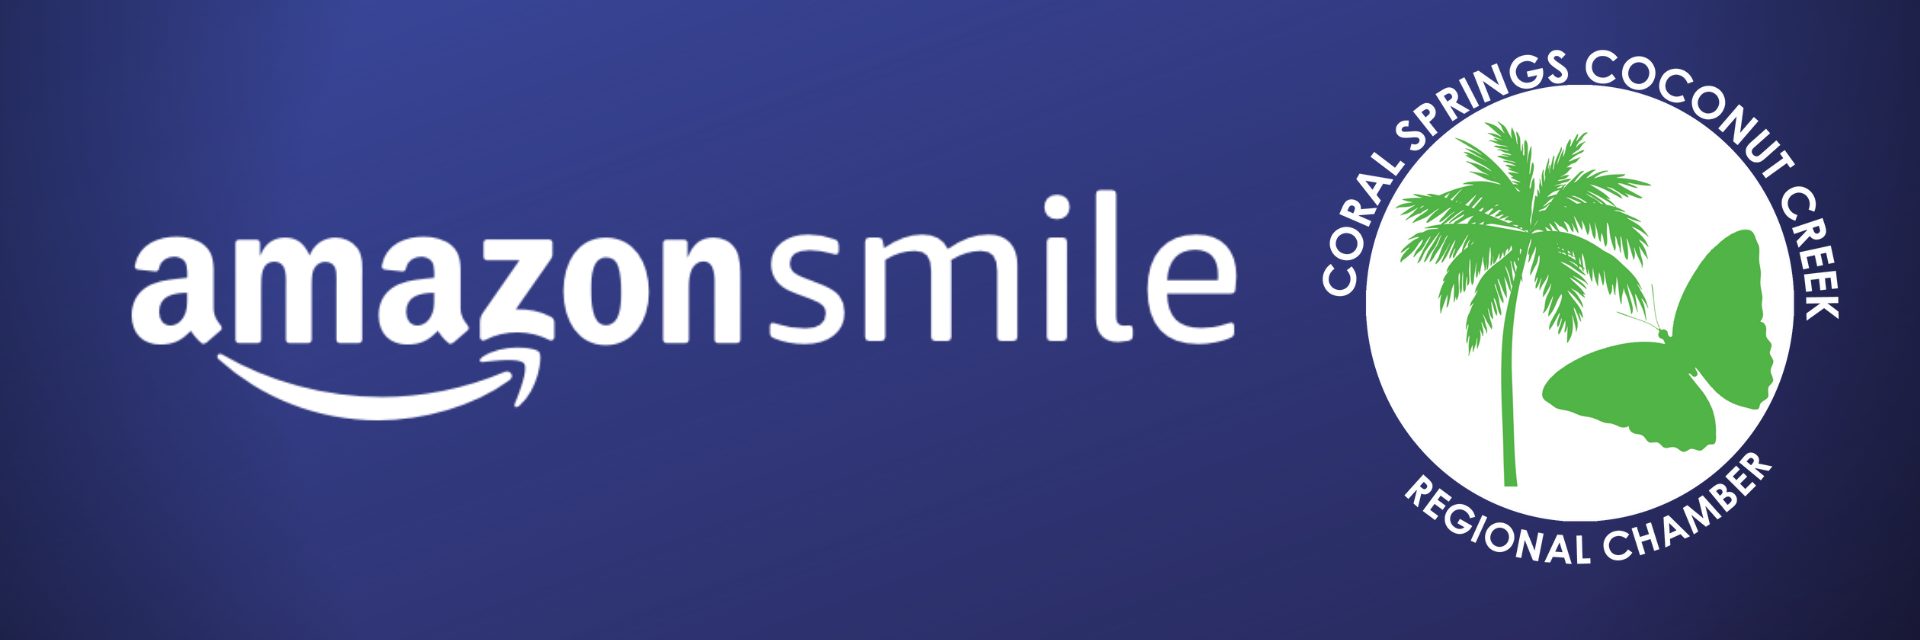 amazon smile